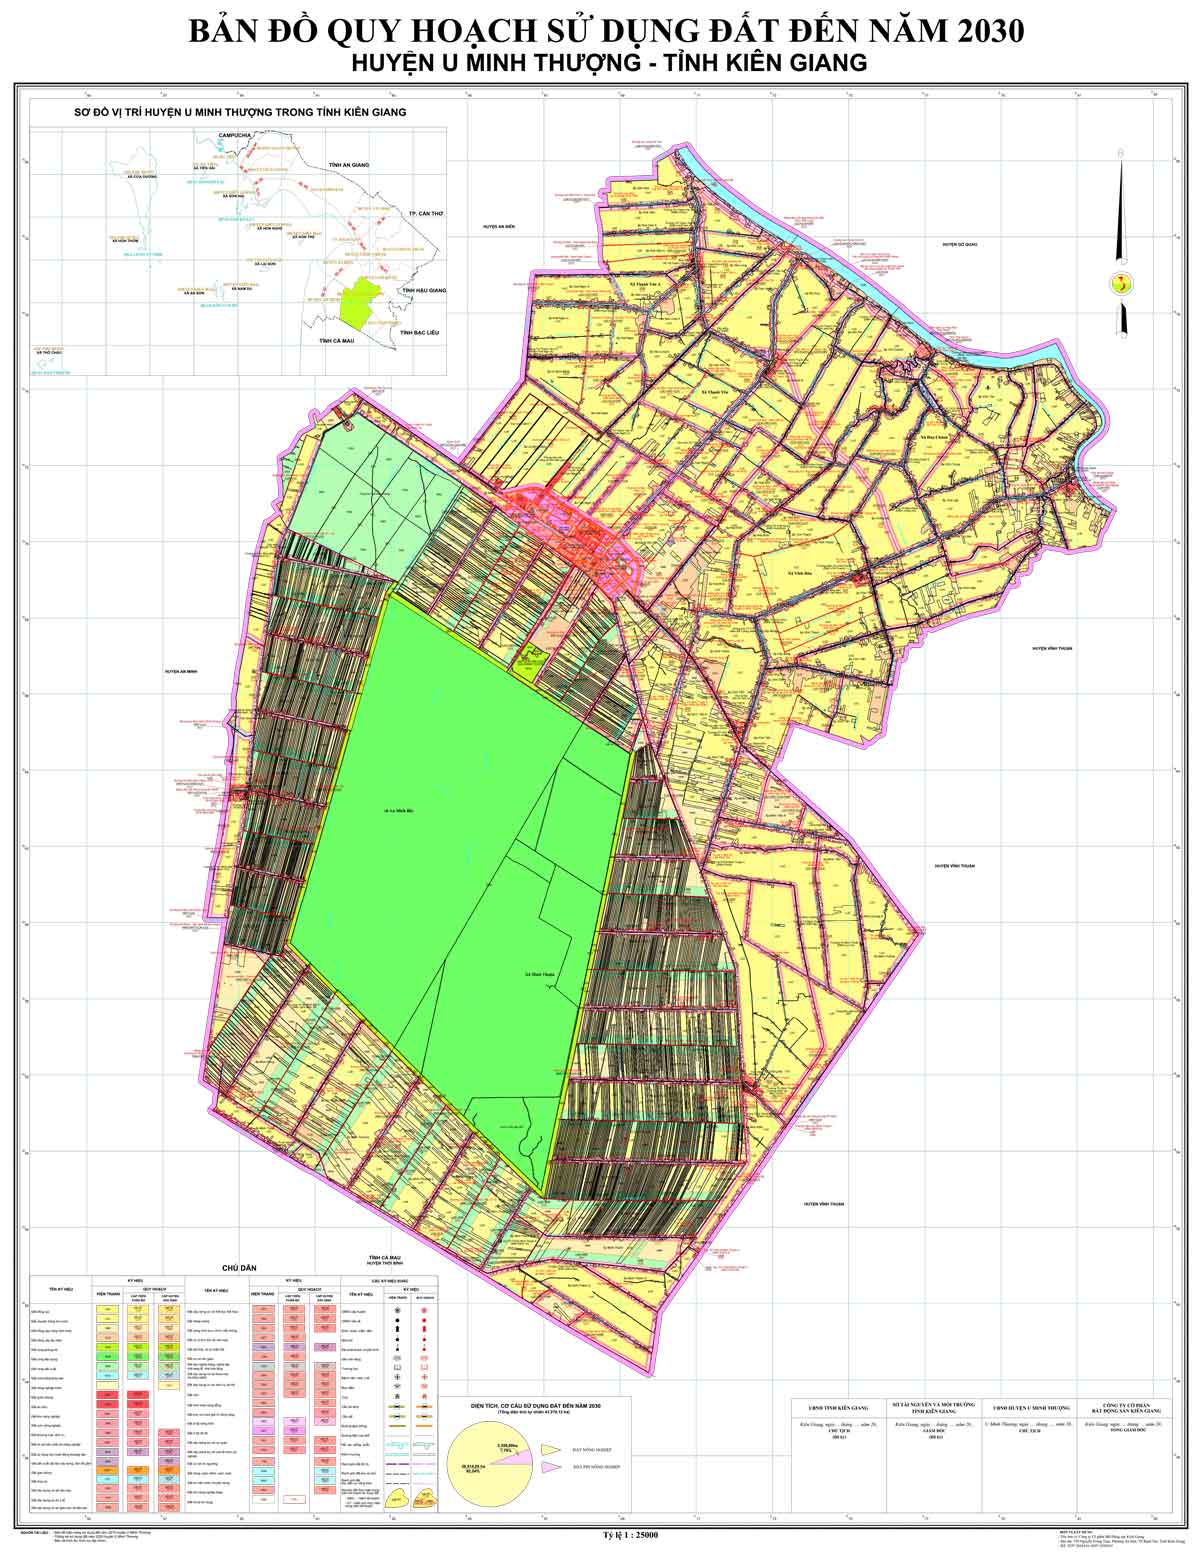 Bản đồ QHSDĐ huyện U Minh Thượng đến năm 2030